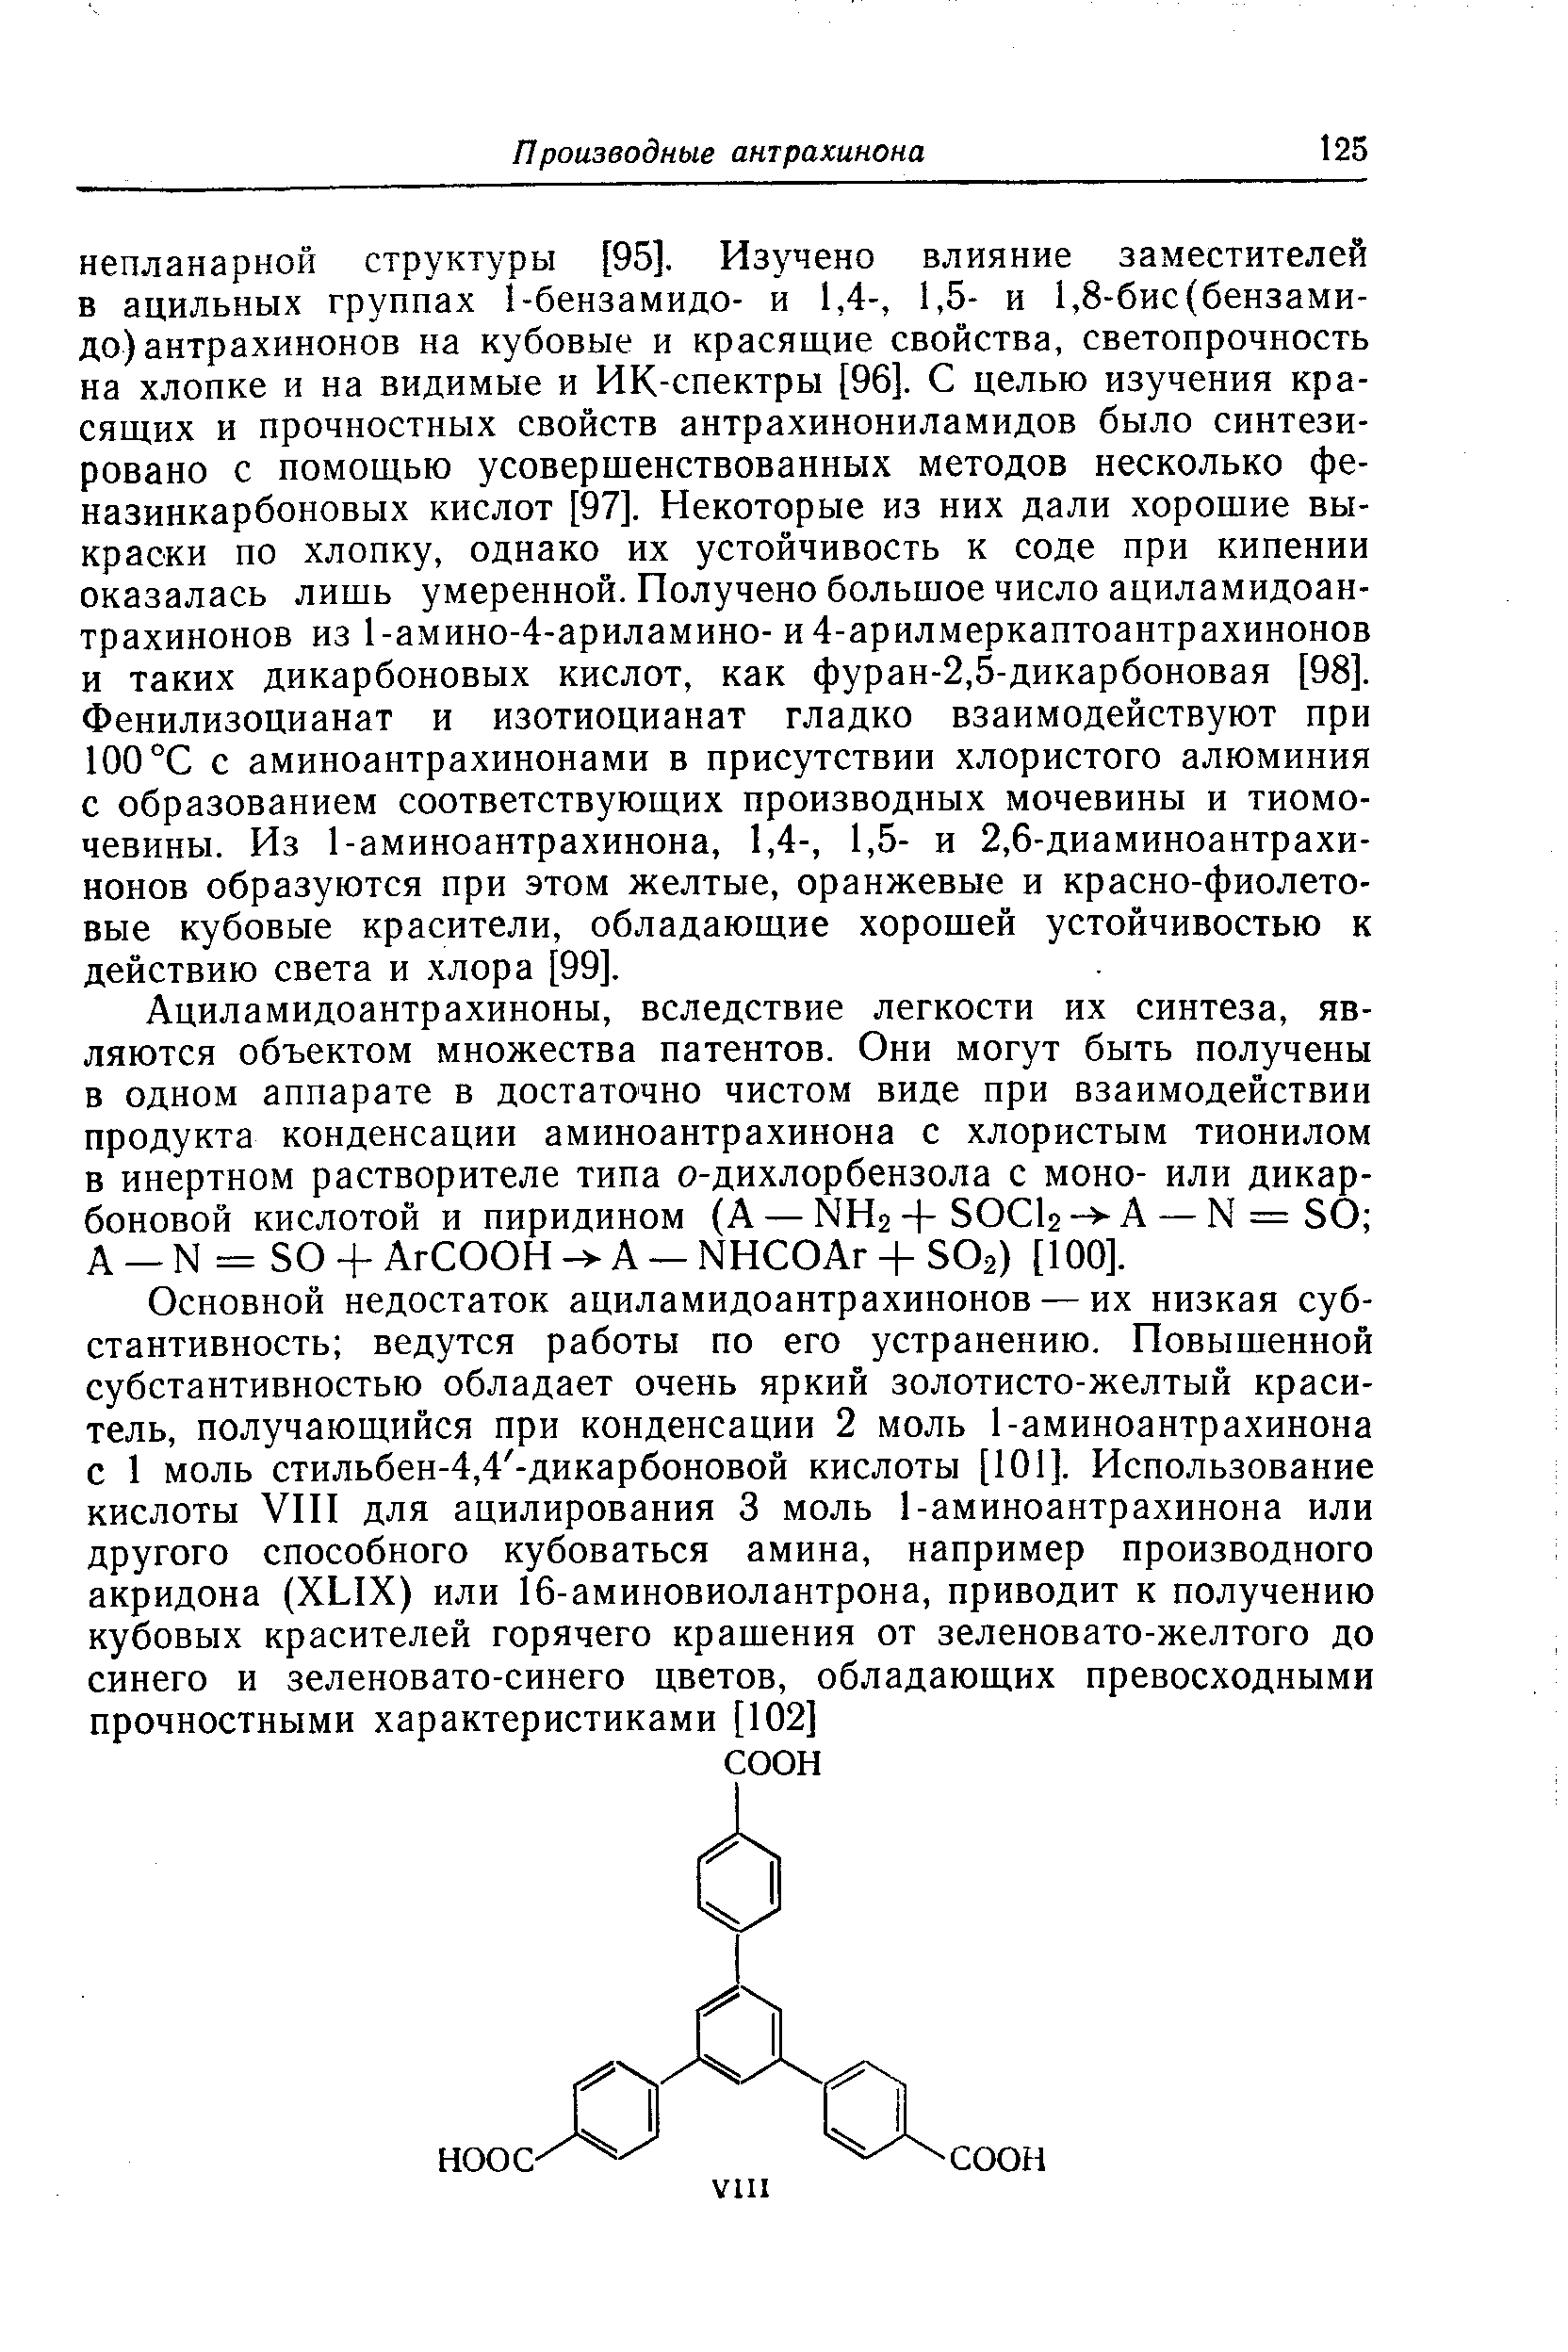 Ациламидоантрахиноны, вследствие легкости их синтеза, являются объектом множества патентов. Они могут быть получены в одном аппарате в достаточно чистом виде при взаимодействии продукта конденсации аминоантрахинона с хлористым тионилом в инертном растворителе типа о-дихлорбензола с моно- или дикар-боновой кислотой и пиридином (А — ЫНг-f SO bА — N = SO А - N = SO -f АгСООН А - NH OAr + SO2) [100].